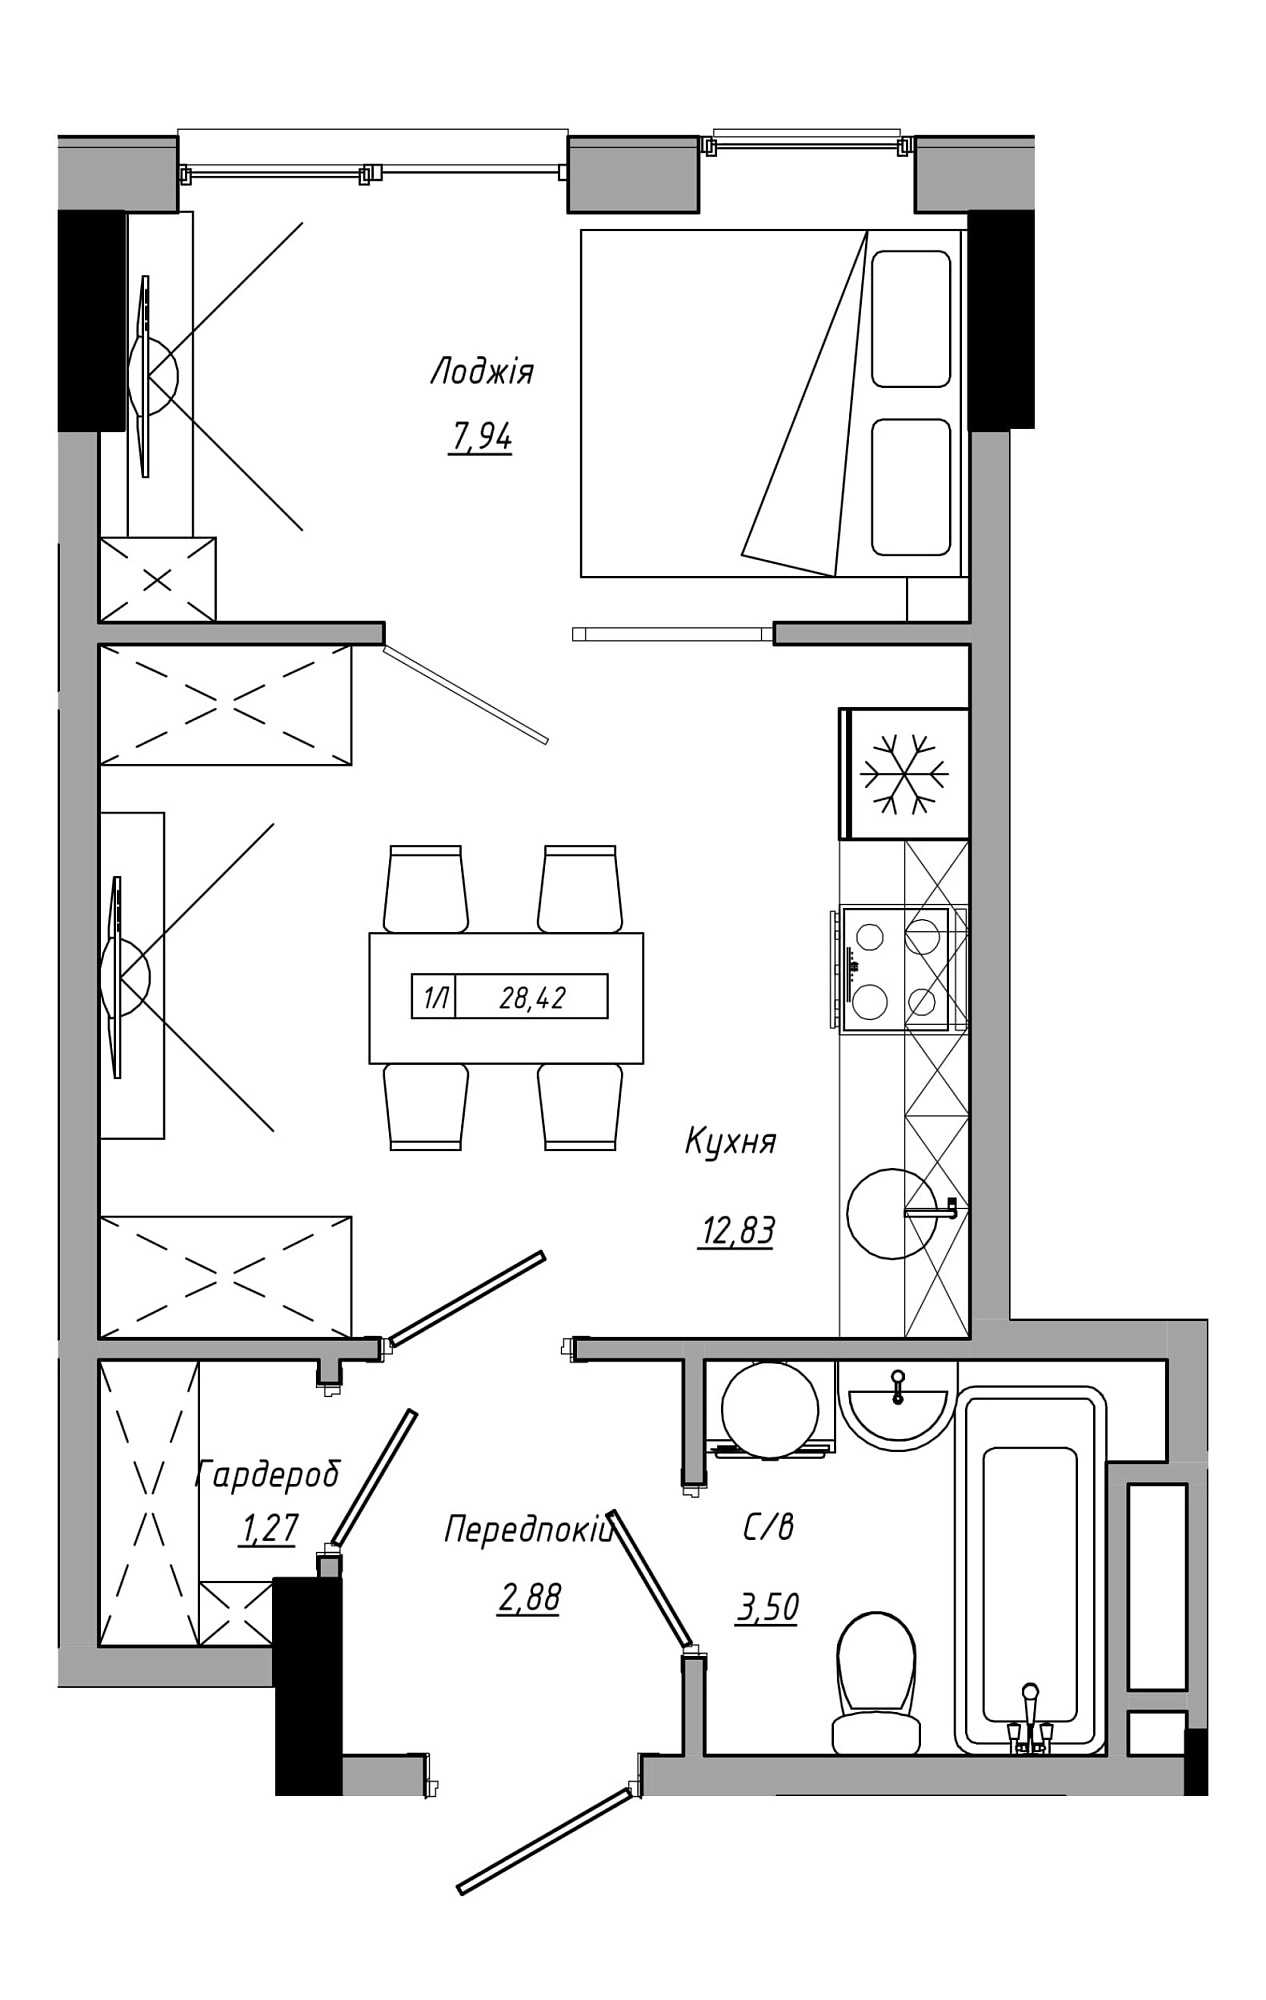 Планування 1-к квартира площею 28.42м2, AB-21-06/00014.